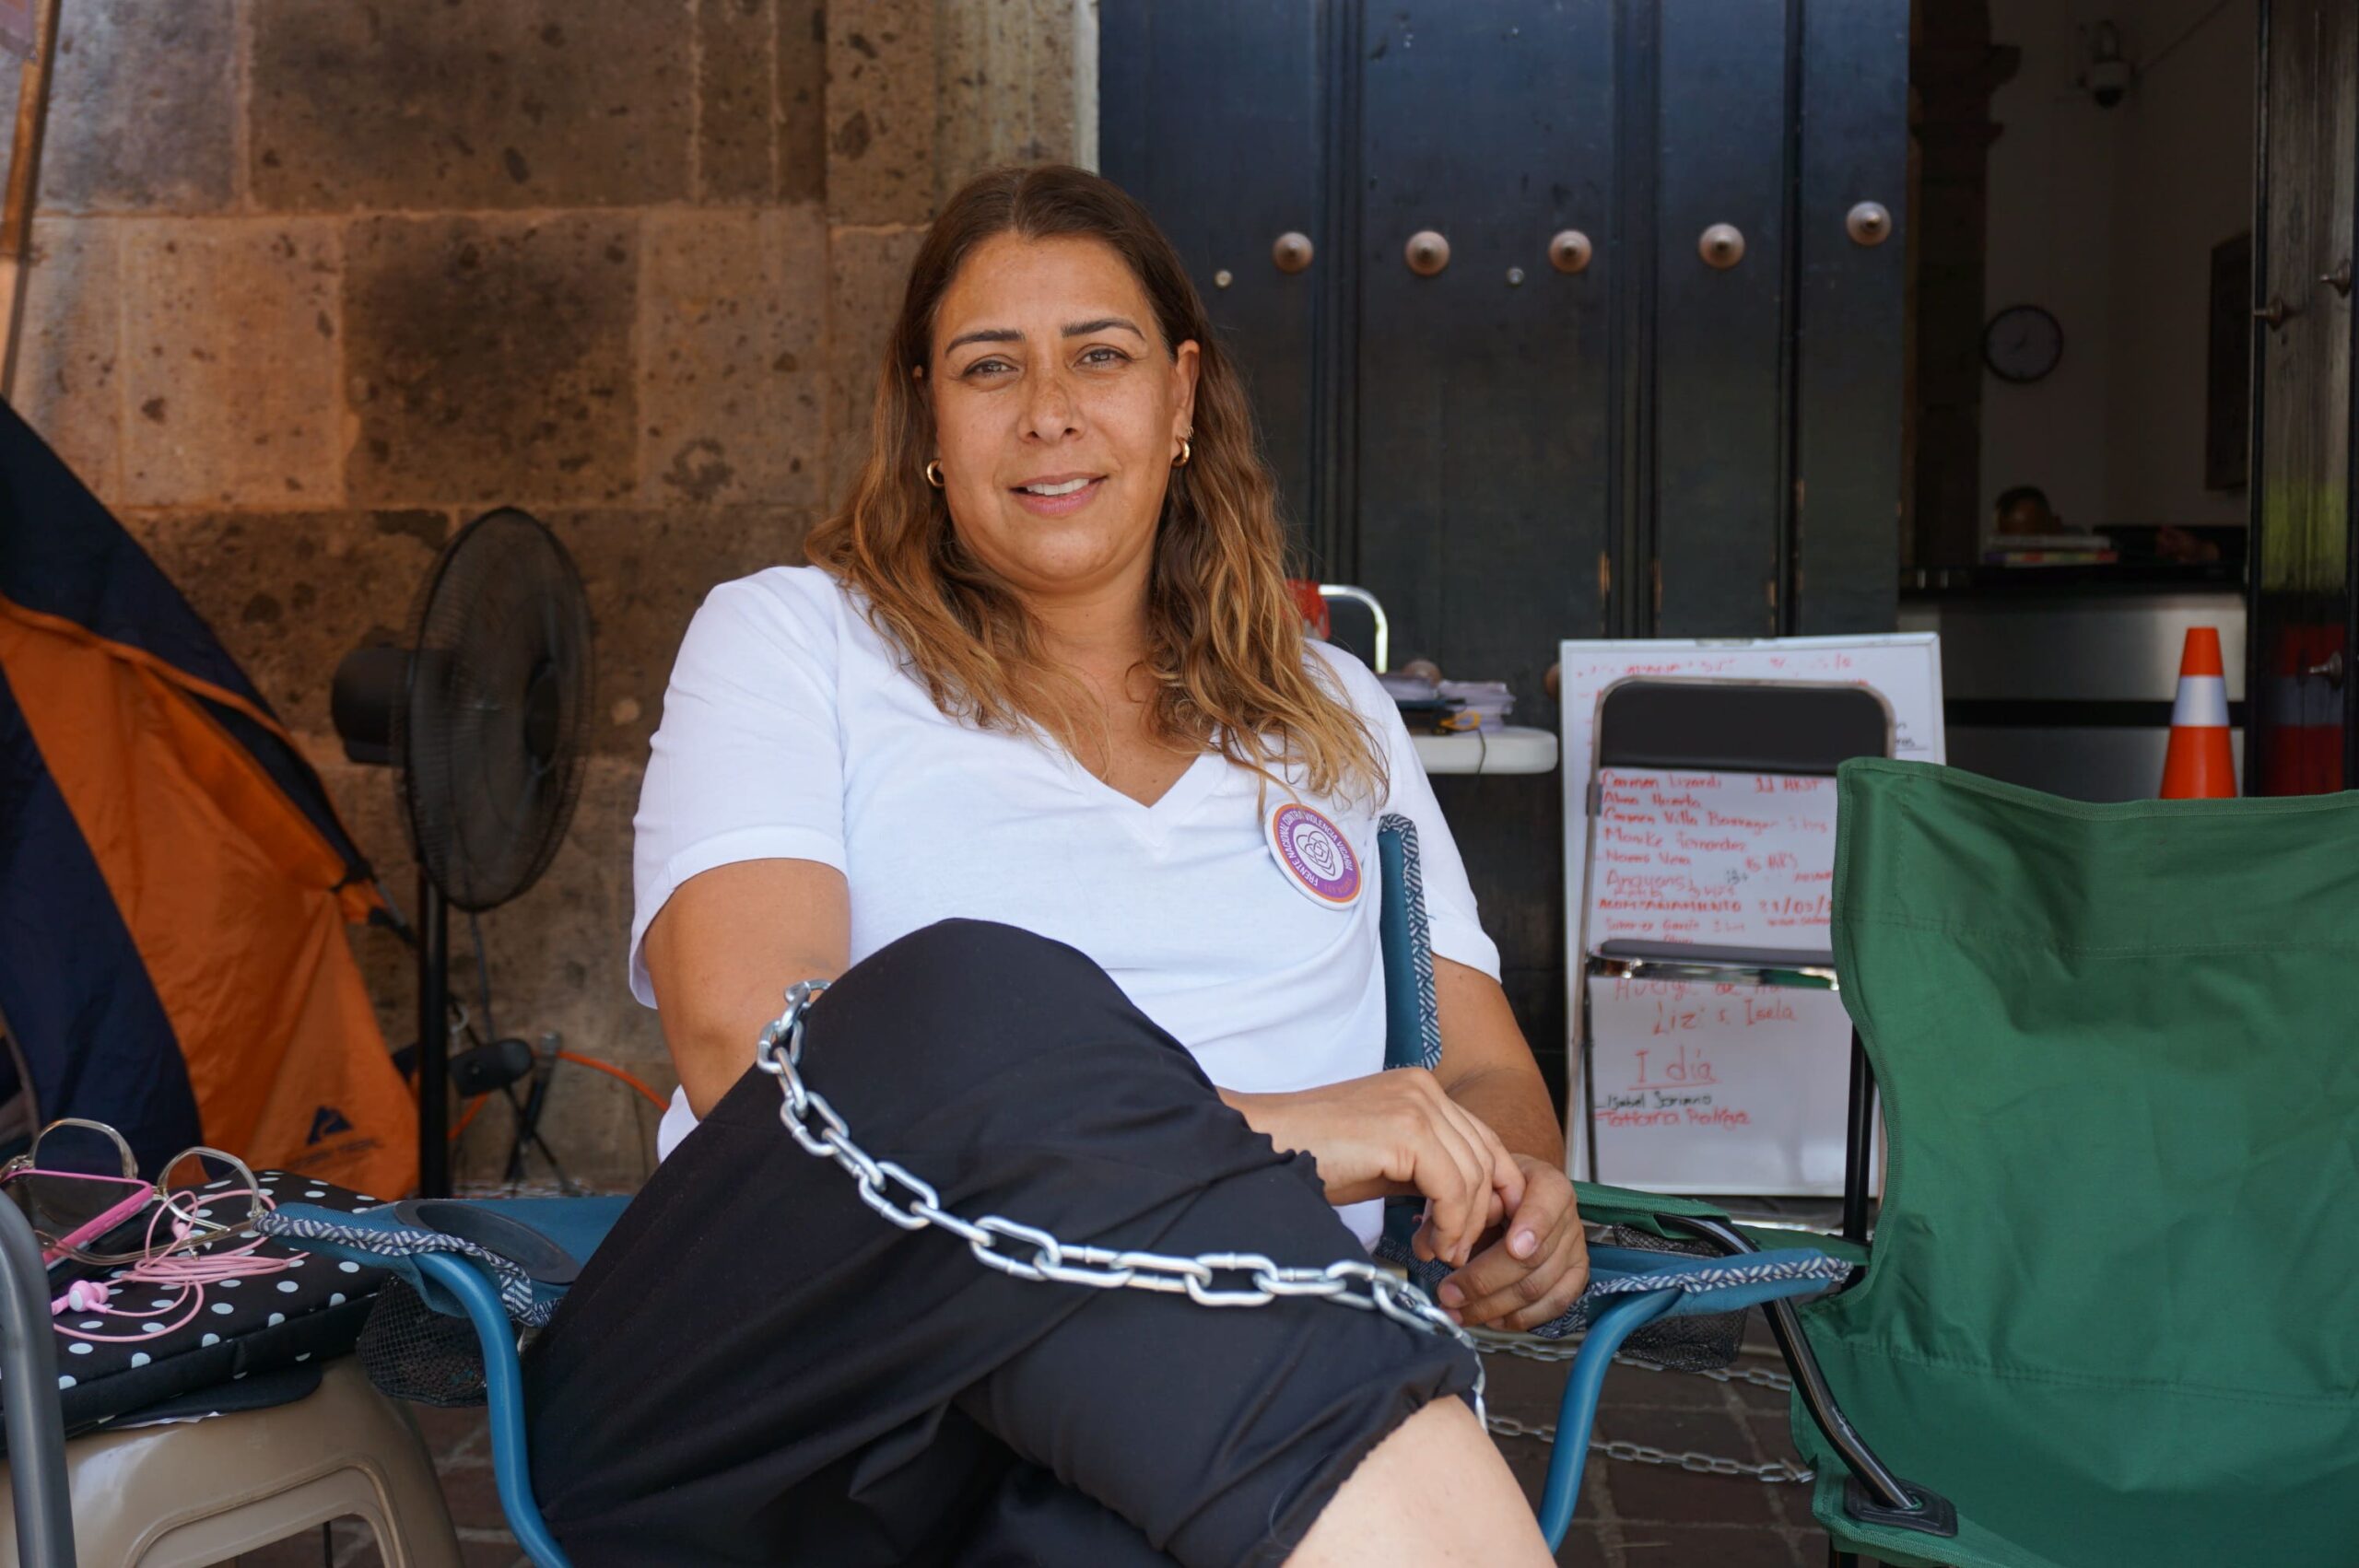 “No nos vamos a mover hasta que la #LeyVicaria se vote”: persiste huelga de hambre y campamento de madres en el Congreso de Jalisco